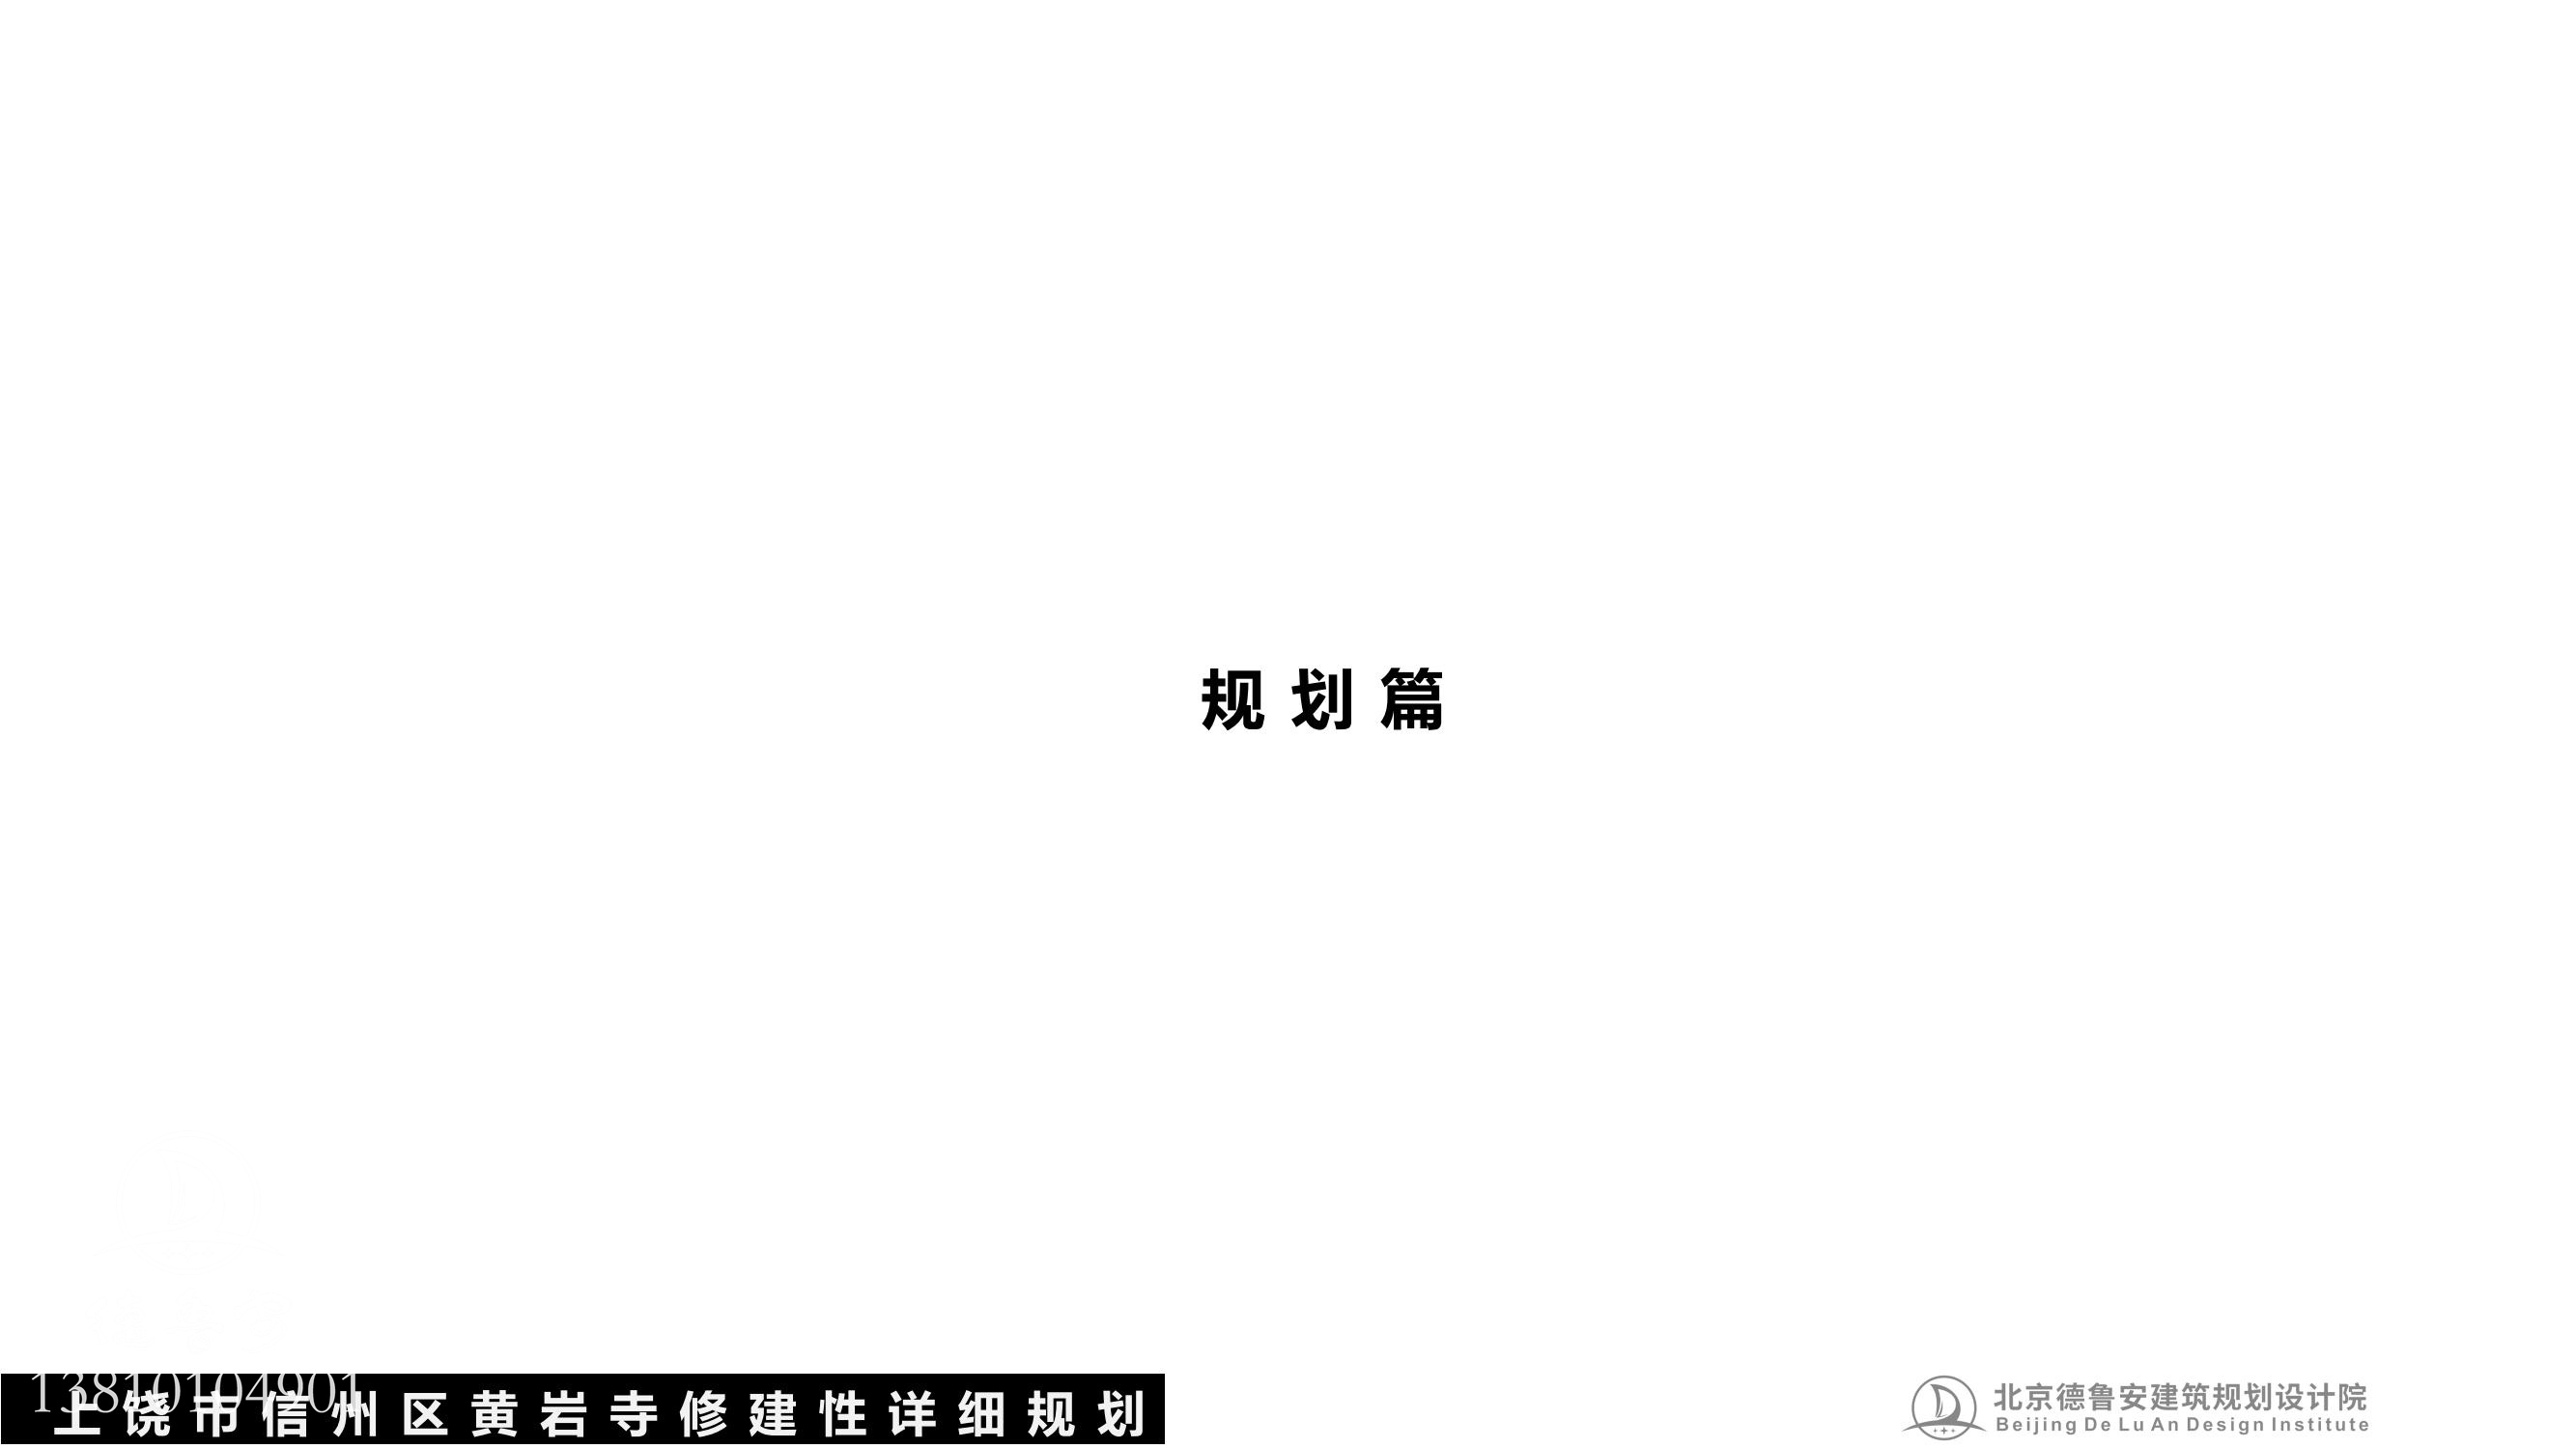 黄岩寺规划文本pdf(1)_14.jpg